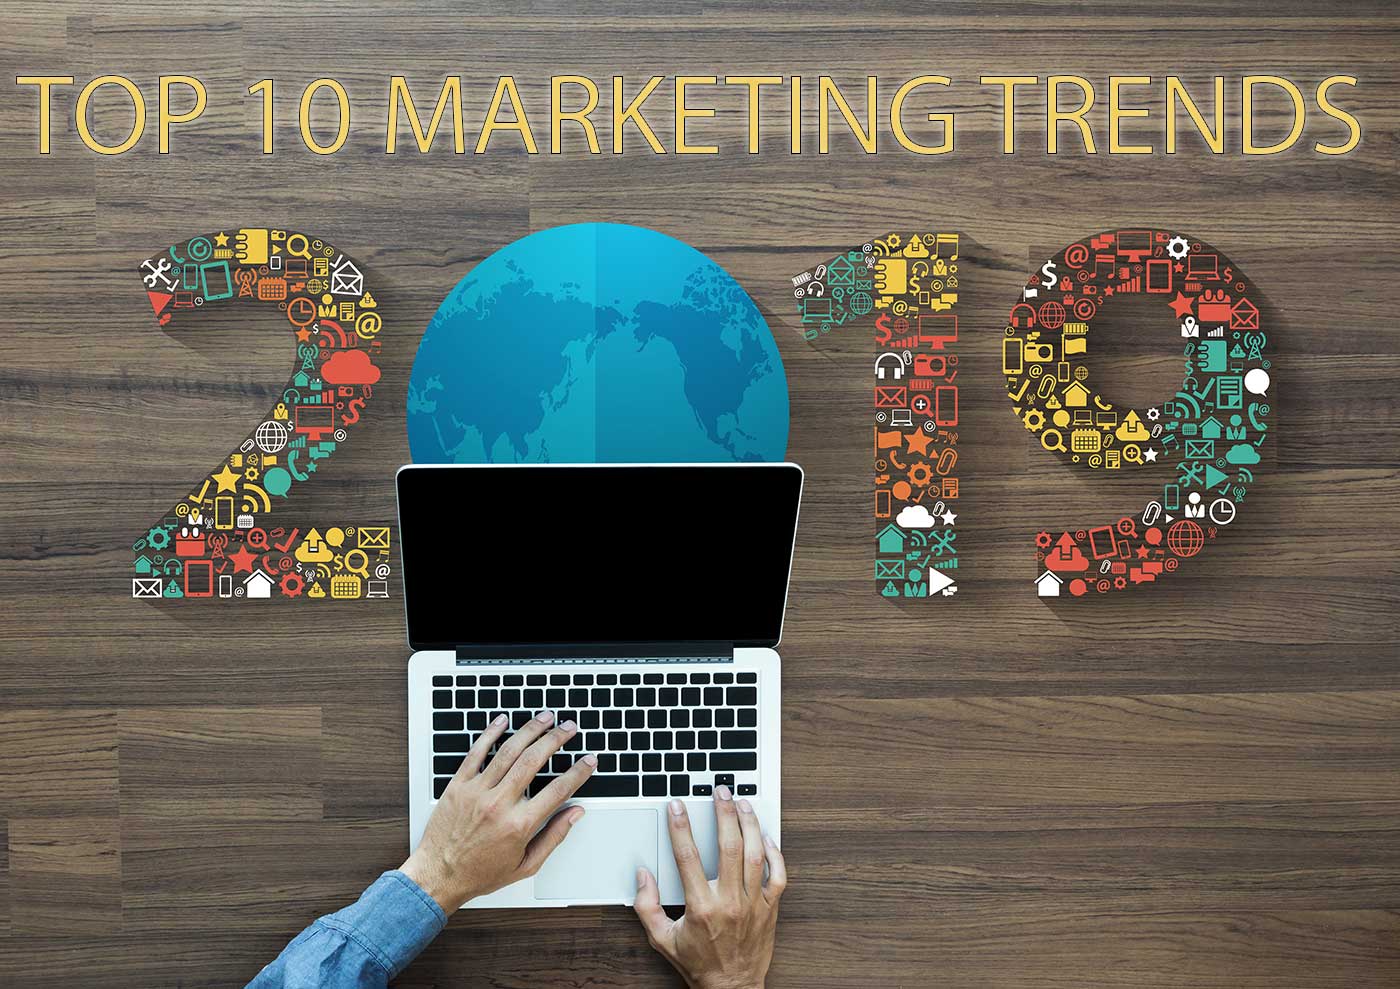 Top 10 Marketing Trends In 2019